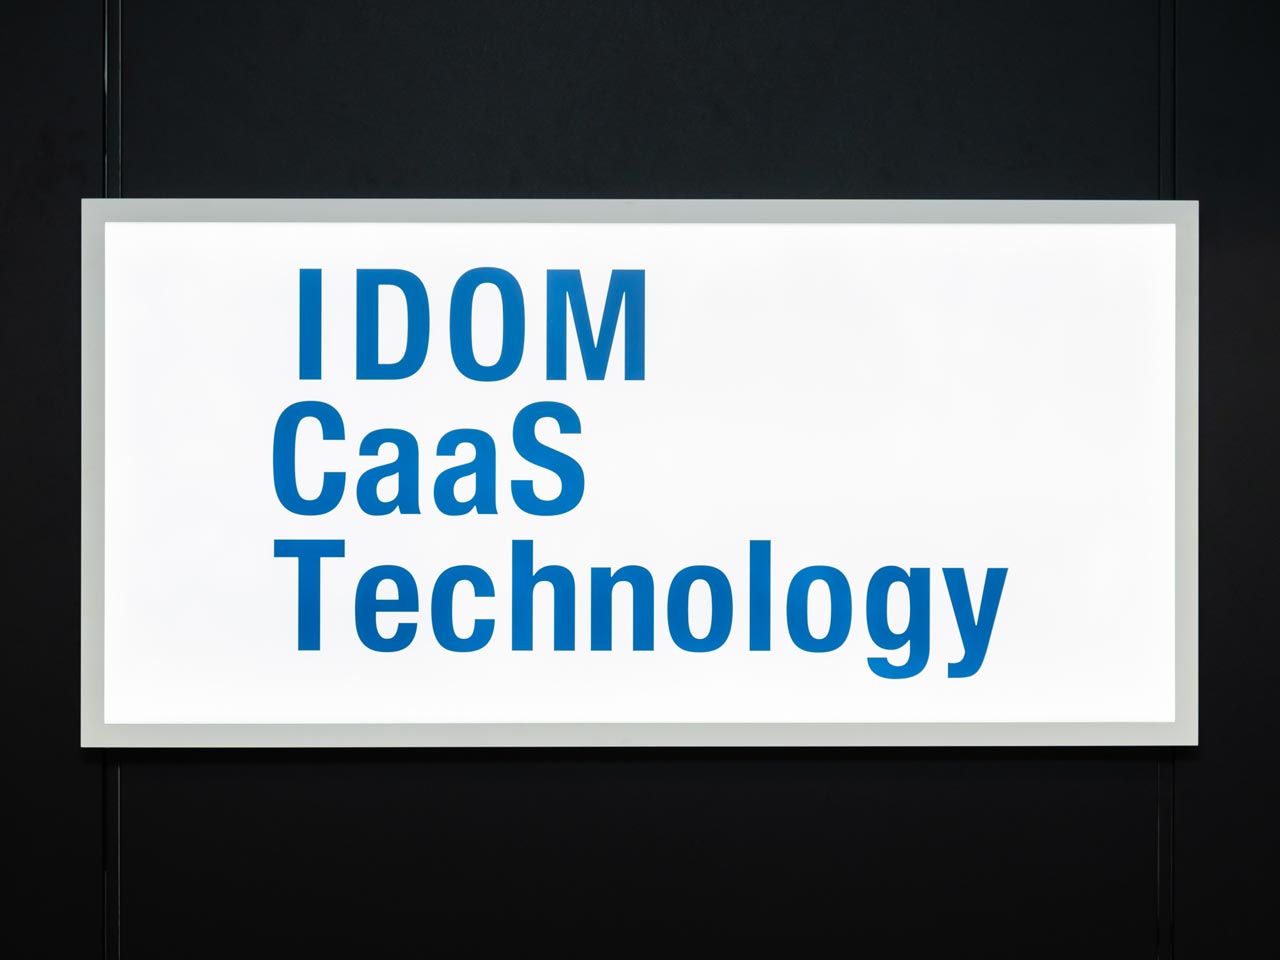 同社は、2020年4月に株式会社IDOMからスピンオフする形で設立されたベンチャー企業。